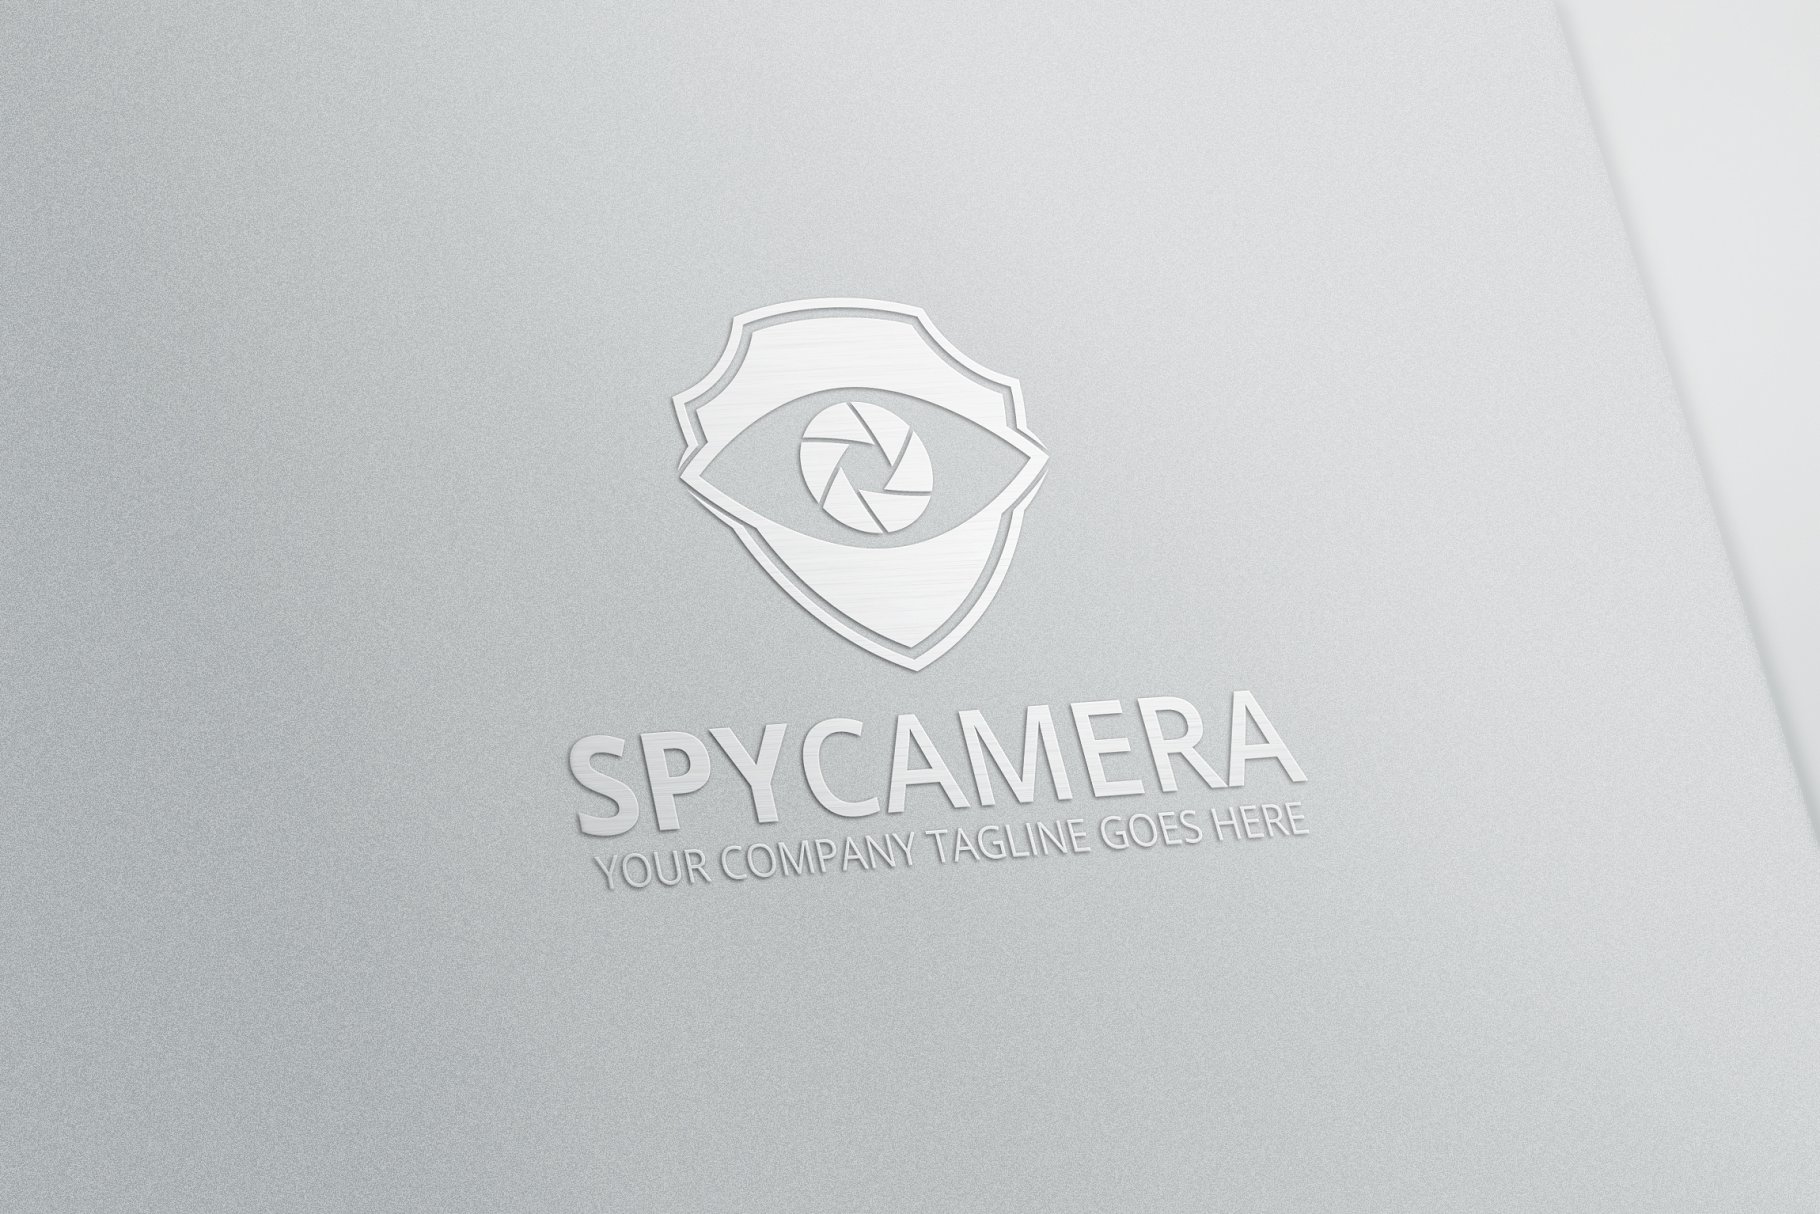 监控摄像设备品牌Logo模板 Spy Camera Logo插图(2)